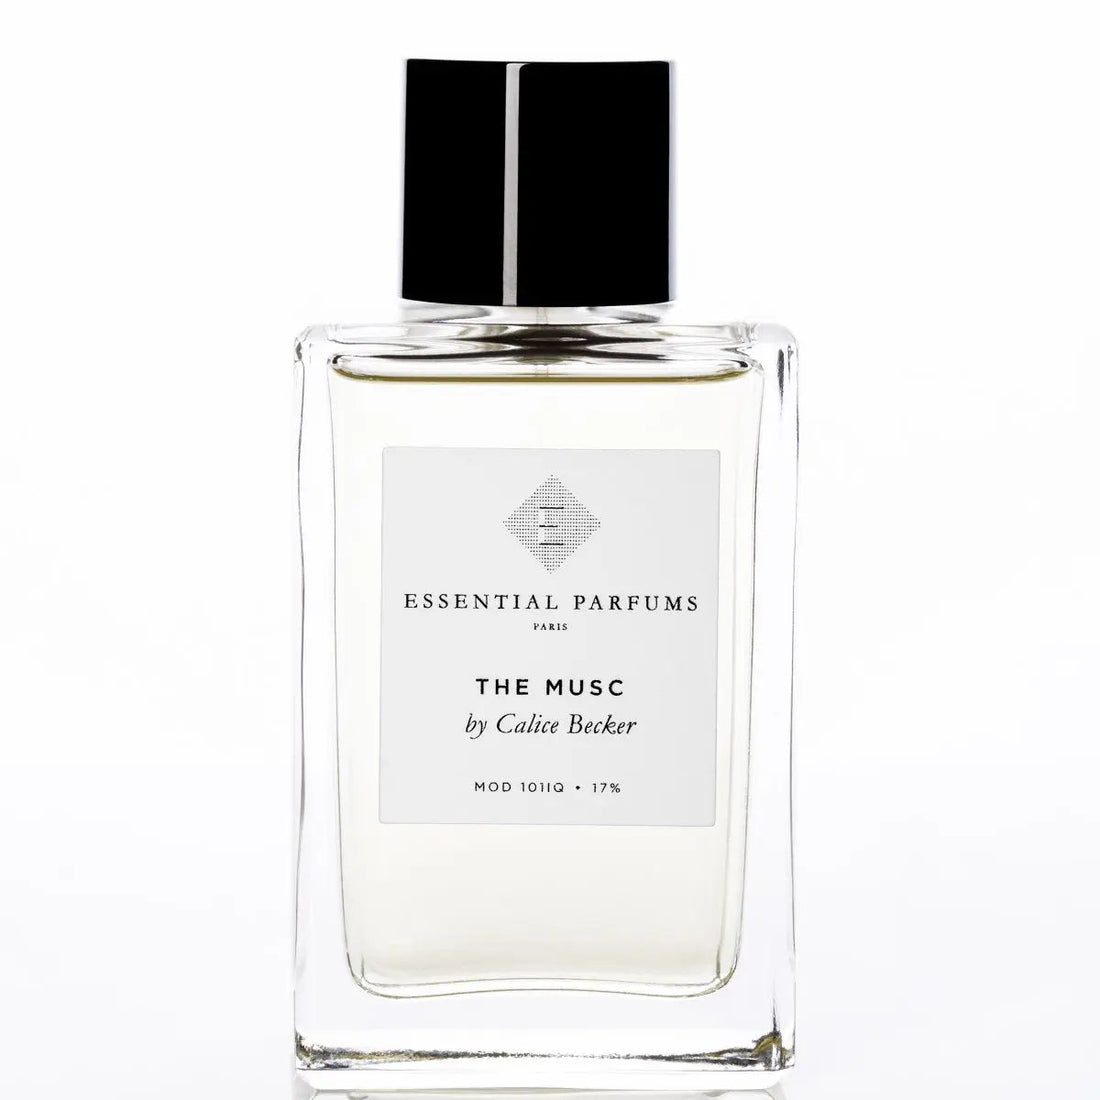 Essential parfums The Musc eau de parfum - 150 毫升补充装